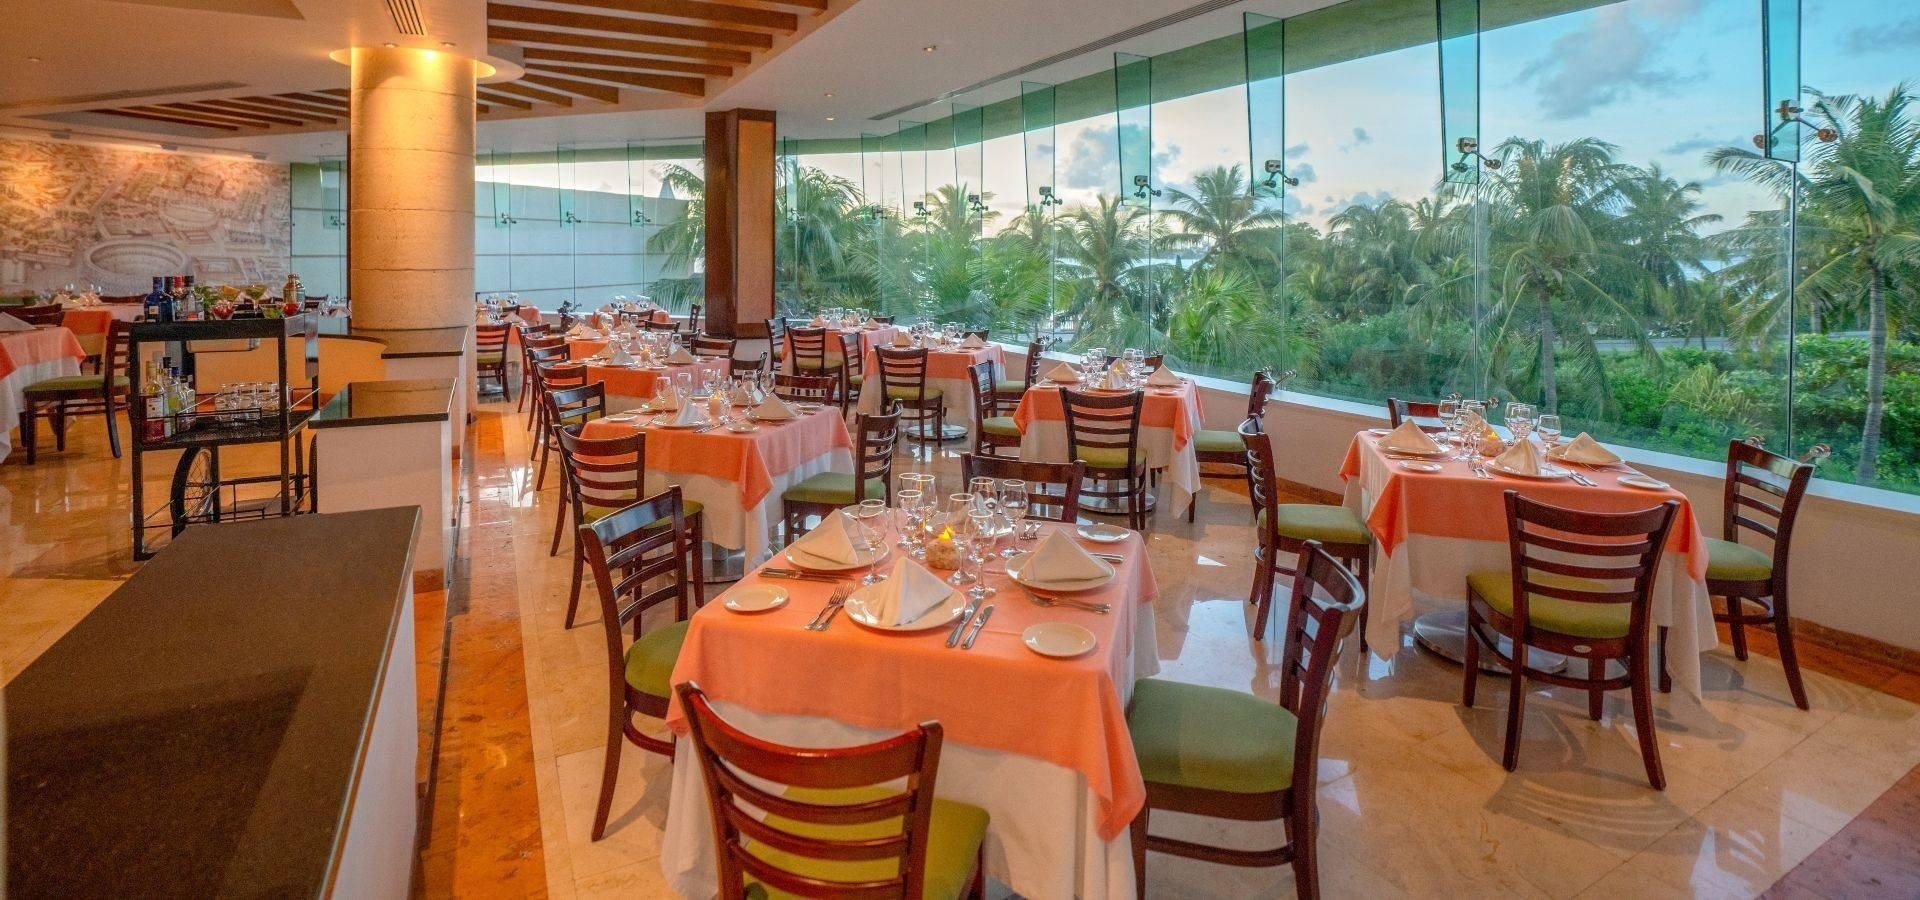 Restaurante El Mirador com vista para o jardim de palmeiras do Grand Park Royal Cancun Hotel